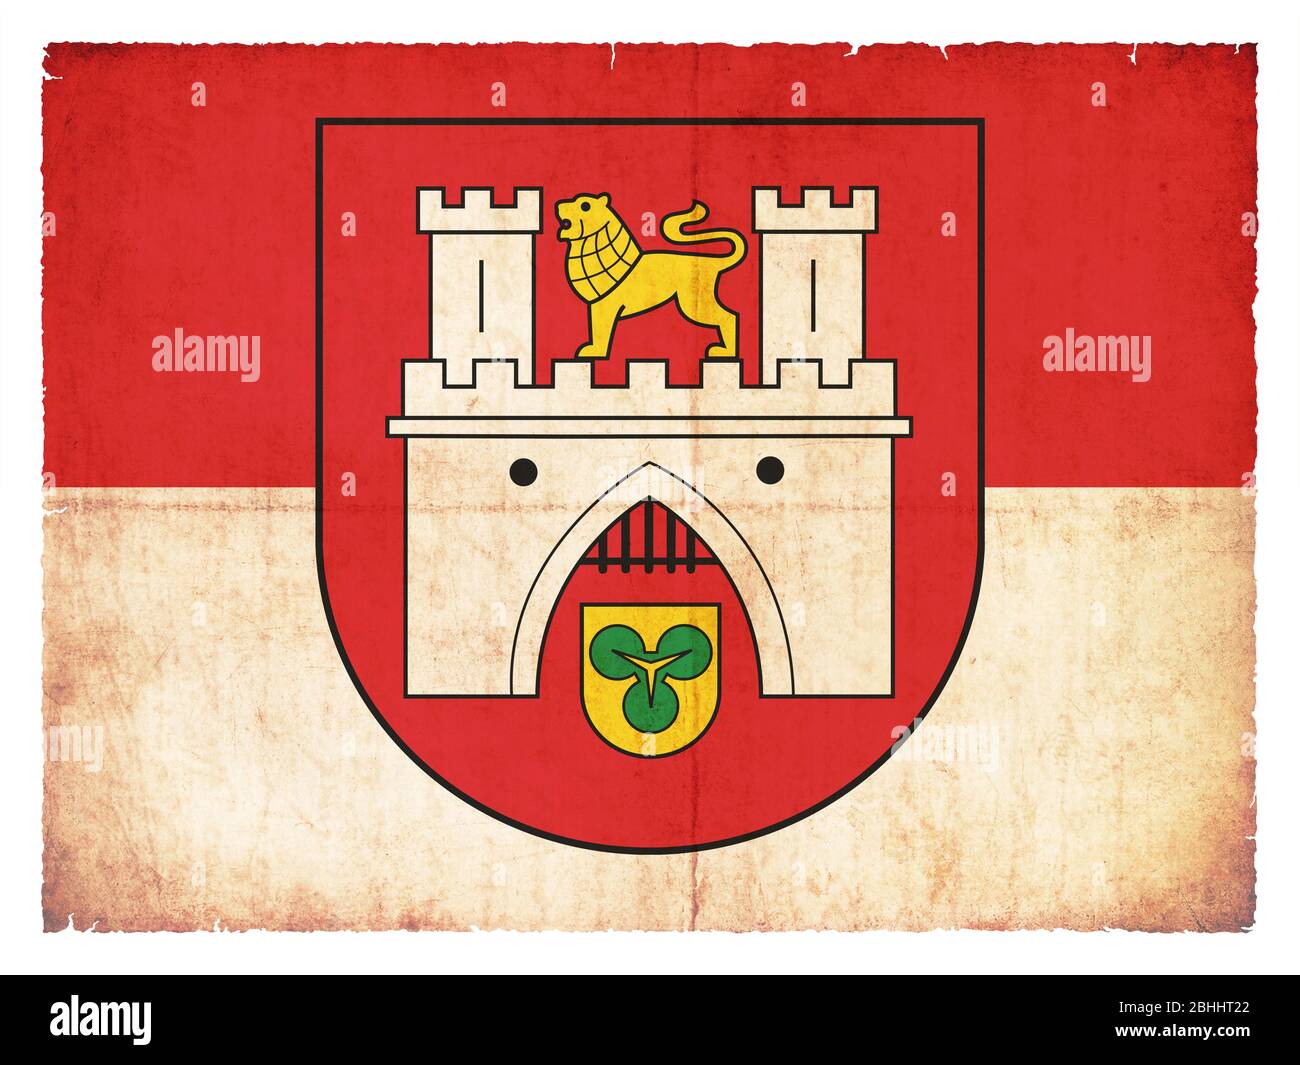 Bandera de la ciudad alemana Oldemburg (Baja Sajonia) creada en estilo grunge Foto de stock